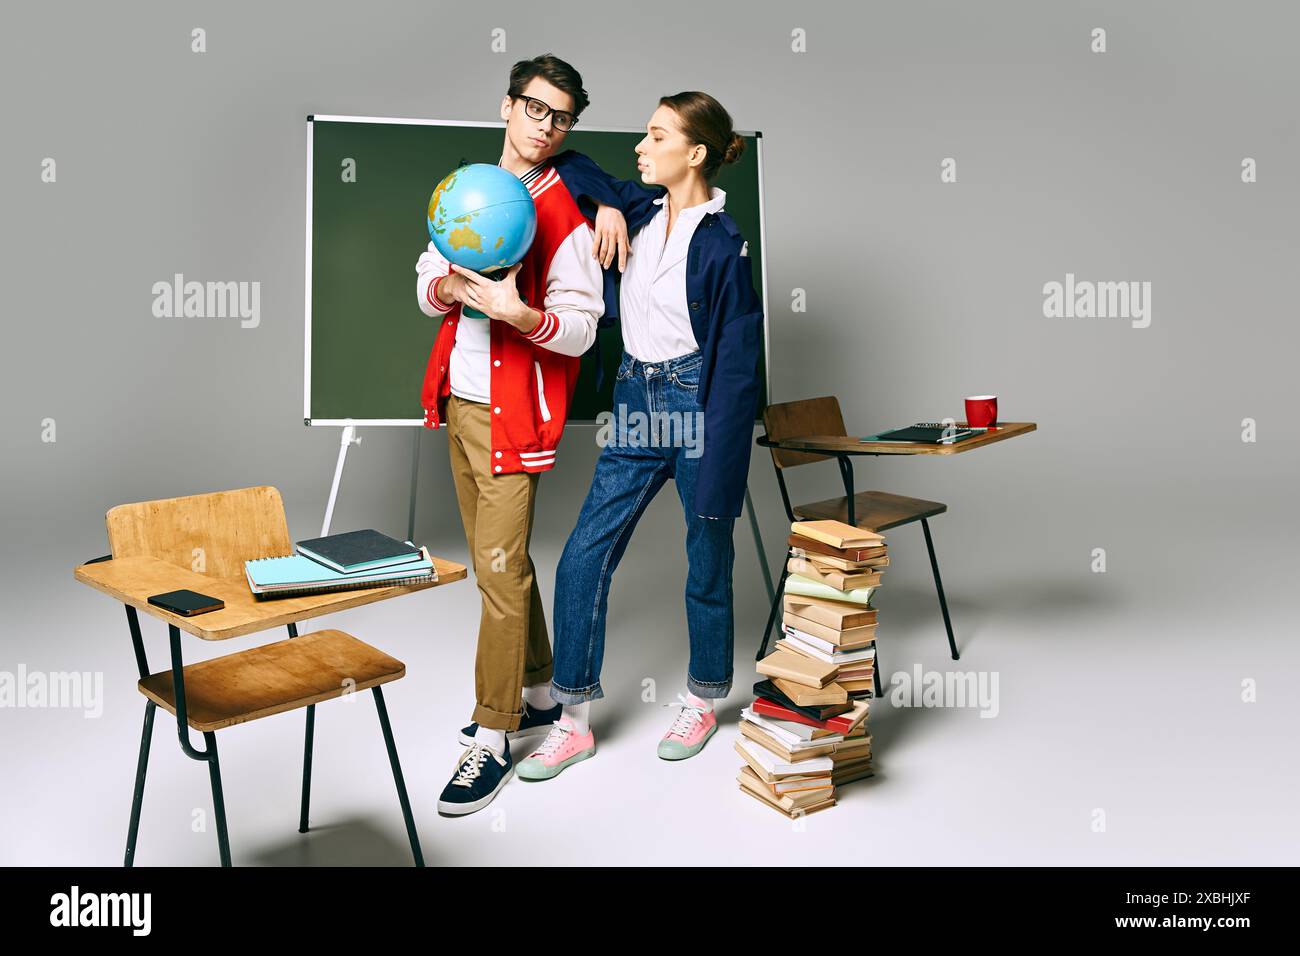 Due studenti universitari che tengono un globo davanti a un green board. Foto Stock